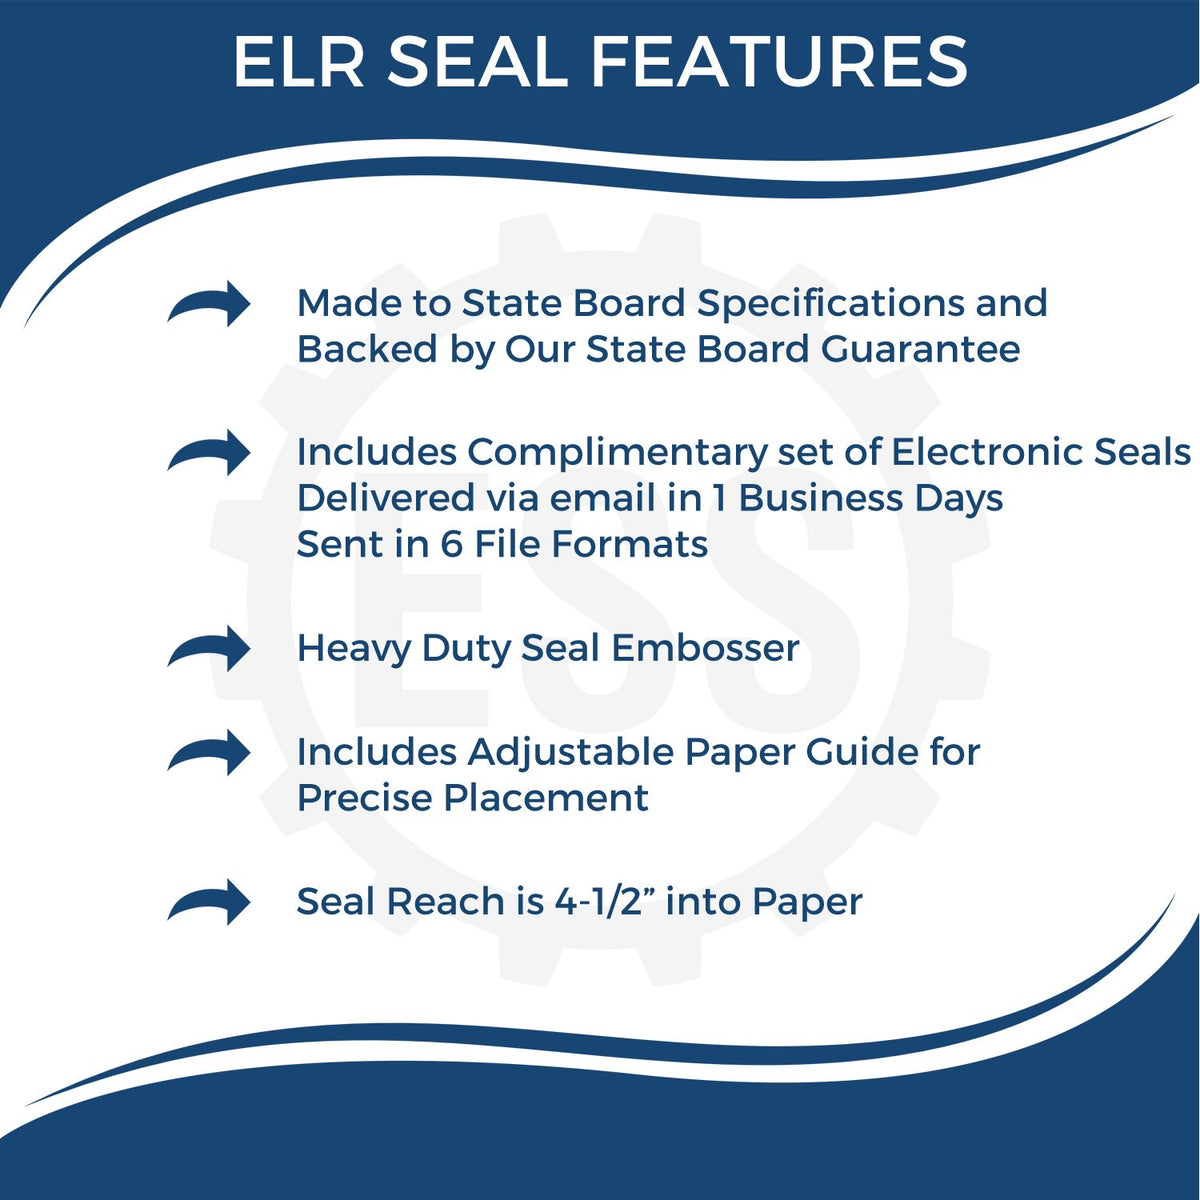 Geologist Extended Long Reach Desk Seal Embosser